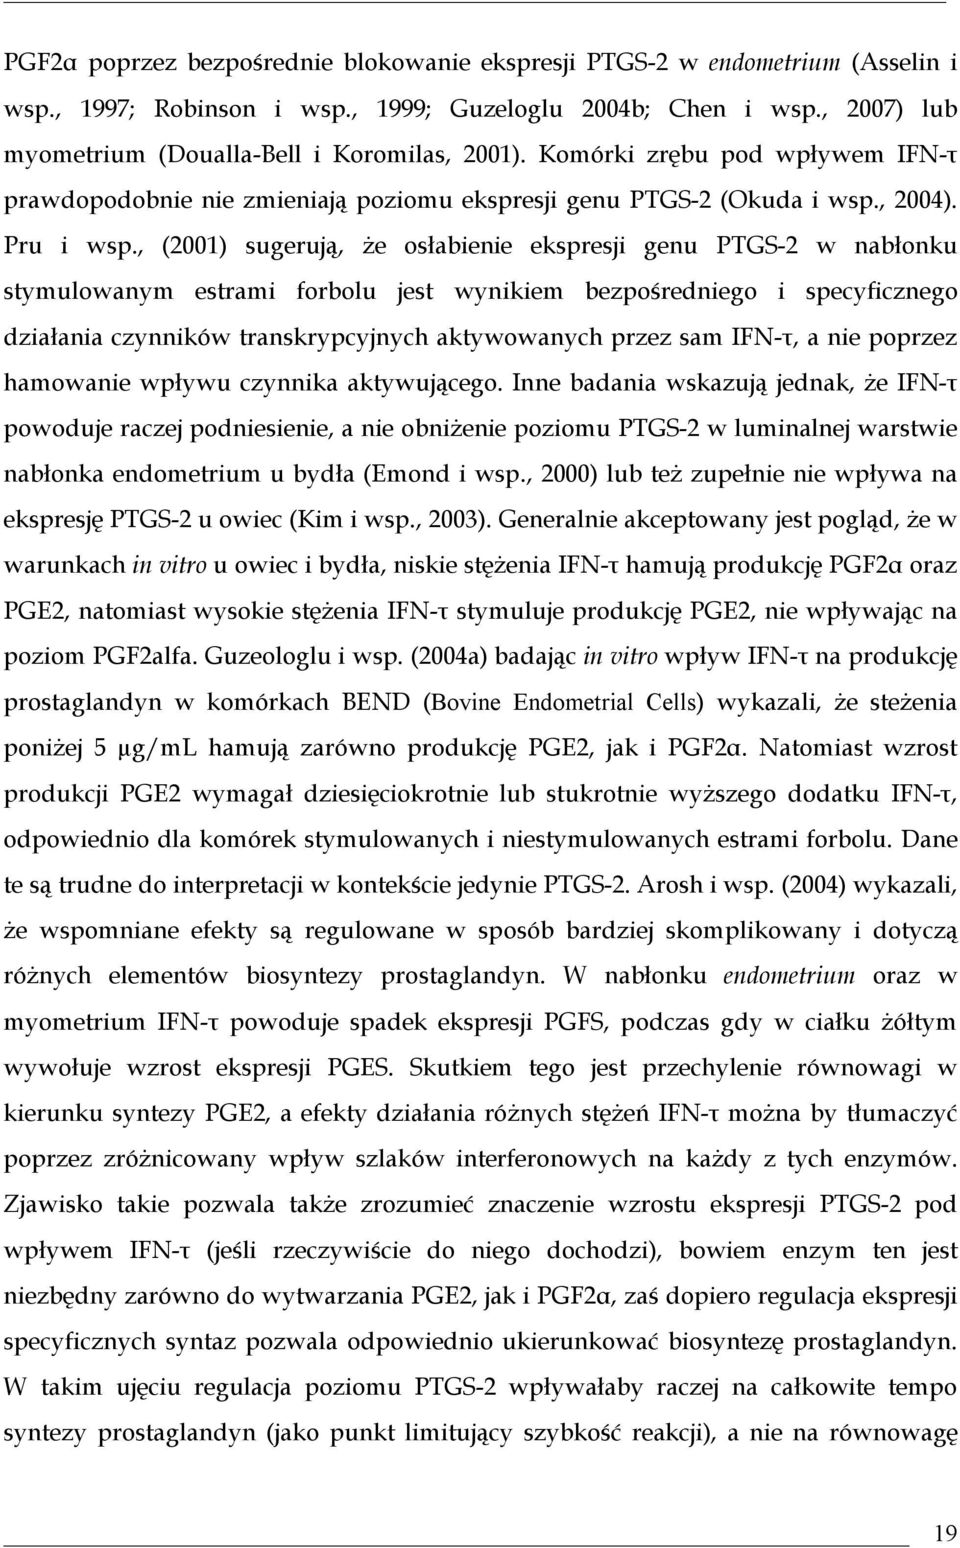 , (2001) sugerują, że osłabienie ekspresji genu PTGS-2 w nabłonku stymulowanym estrami forbolu jest wynikiem bezpośredniego i specyficznego działania czynników transkrypcyjnych aktywowanych przez sam